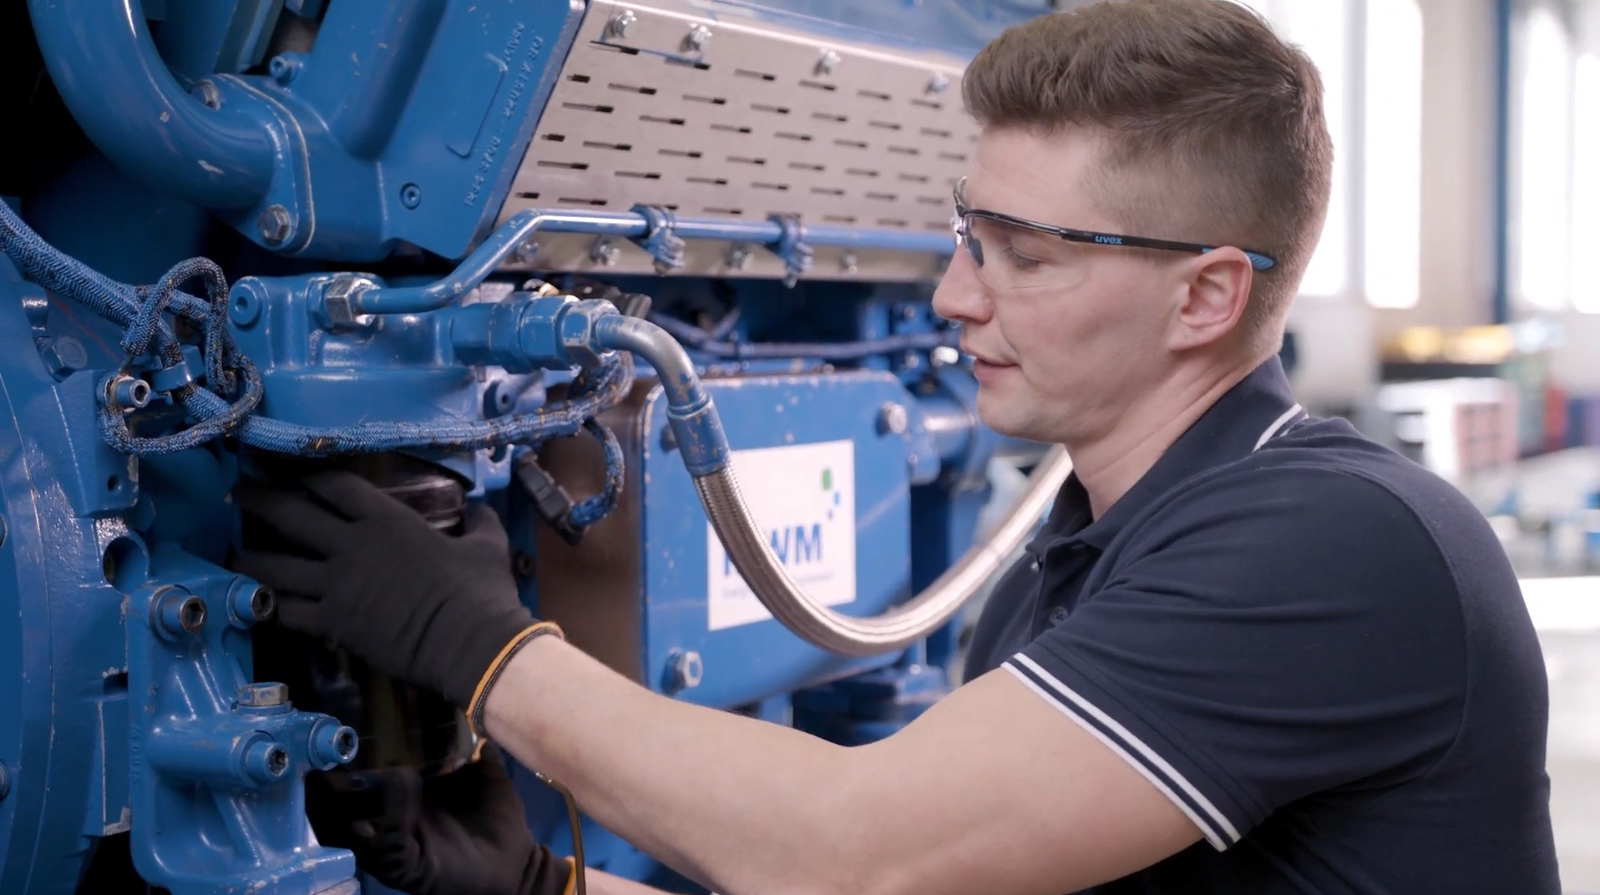 Alexander Klotz, Technischer Trainer vom Learning Center Service in Mannheim, gibt Tipps für den Einbau des neuen Schmierölfilters am MWM Gasmotor. 